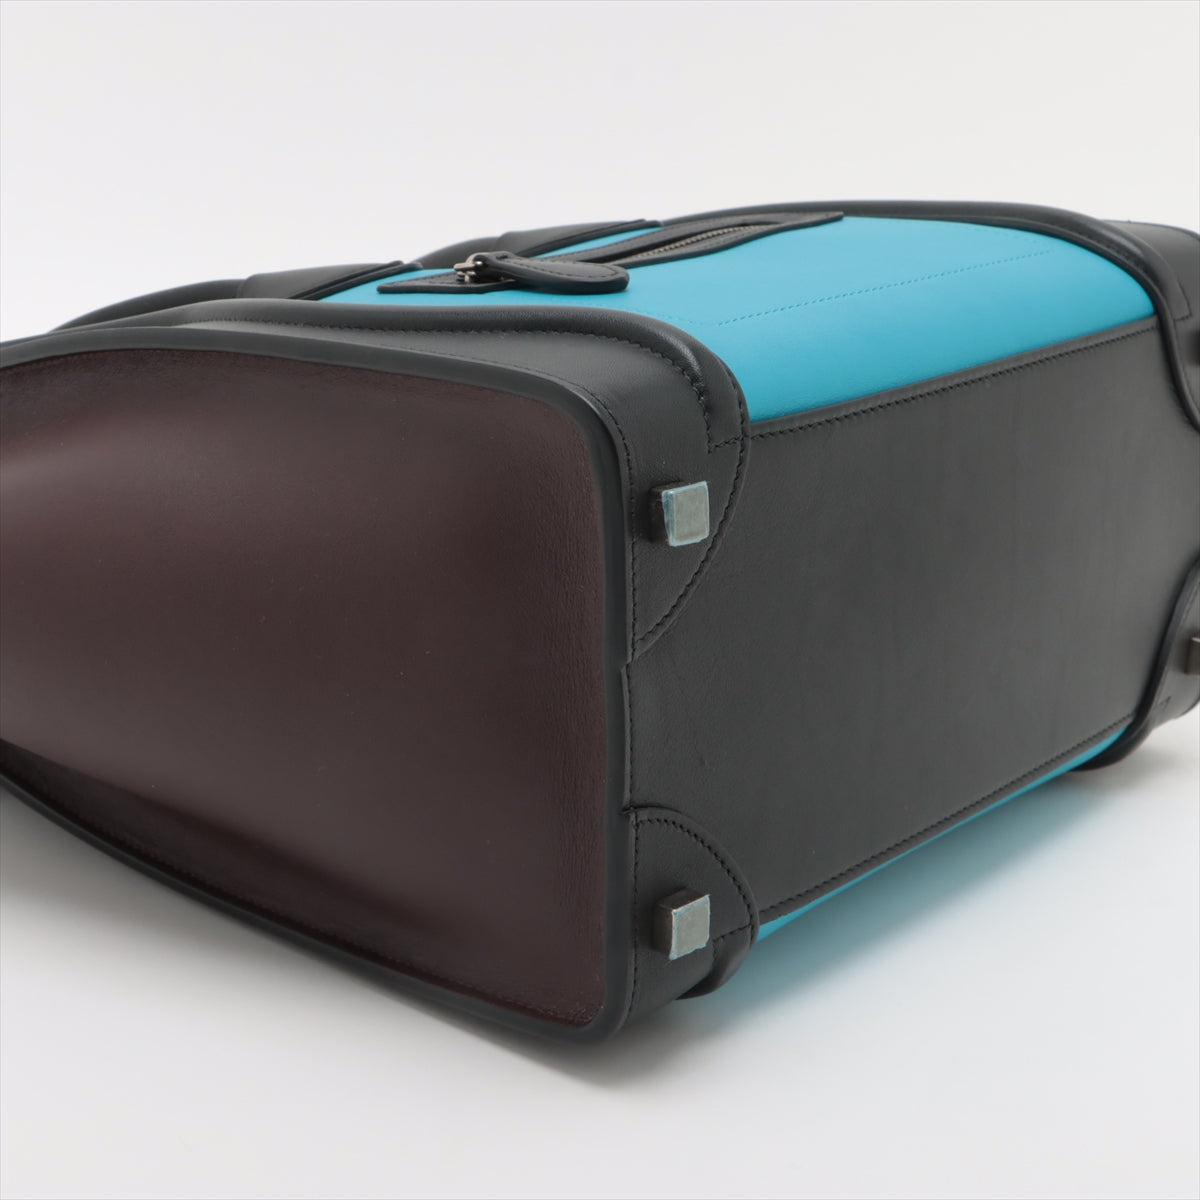 Celine Luggage Micro- 皮革手提包 多色